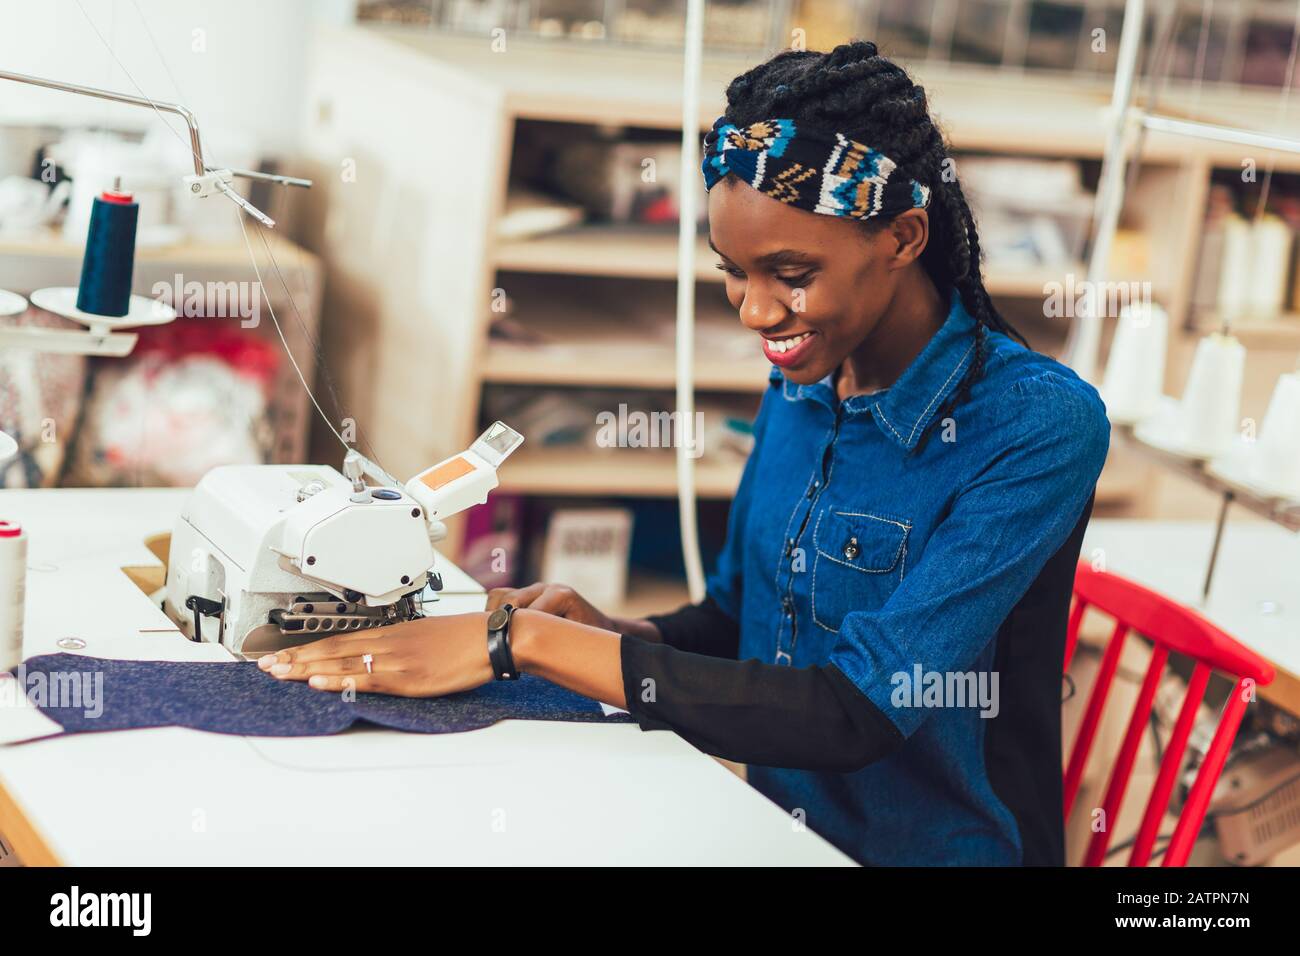 Jeune ouvrier africain du textile à coudre sur la chaîne de production.  Femme couturière travaillant avec machine à coudre Photo Stock - Alamy